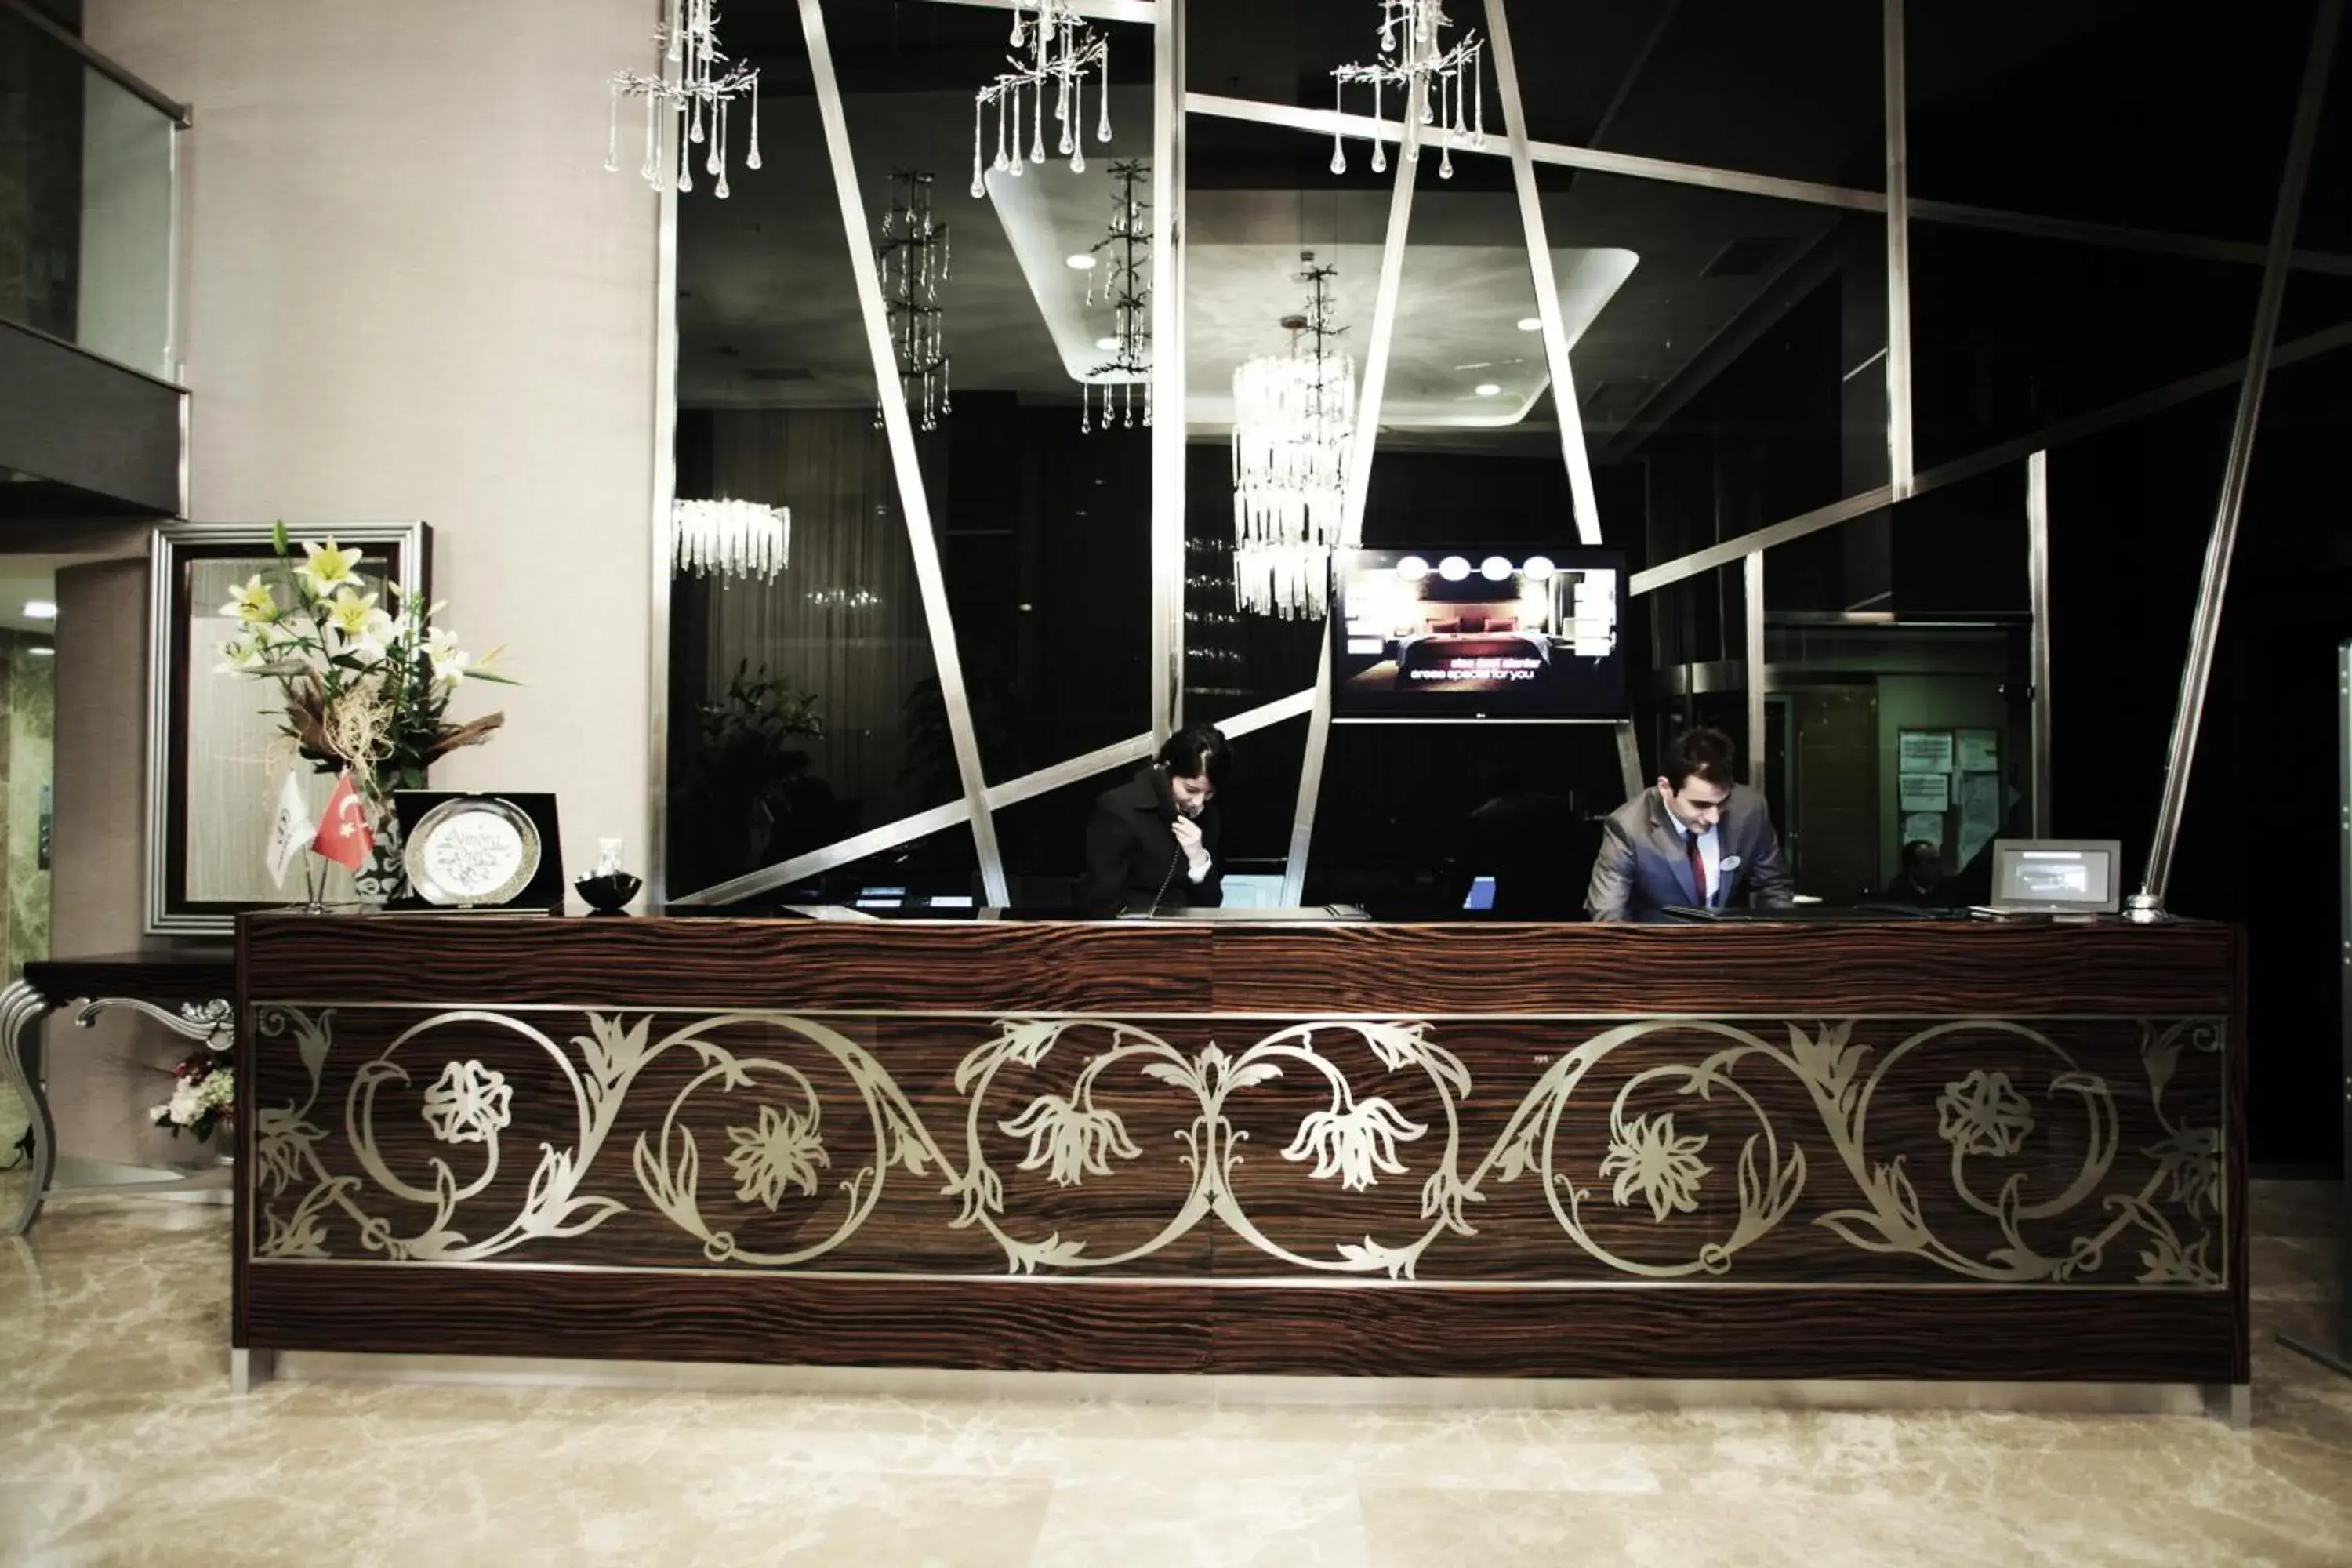 Lobby or reception, Lobby/Reception in Demora Hotel